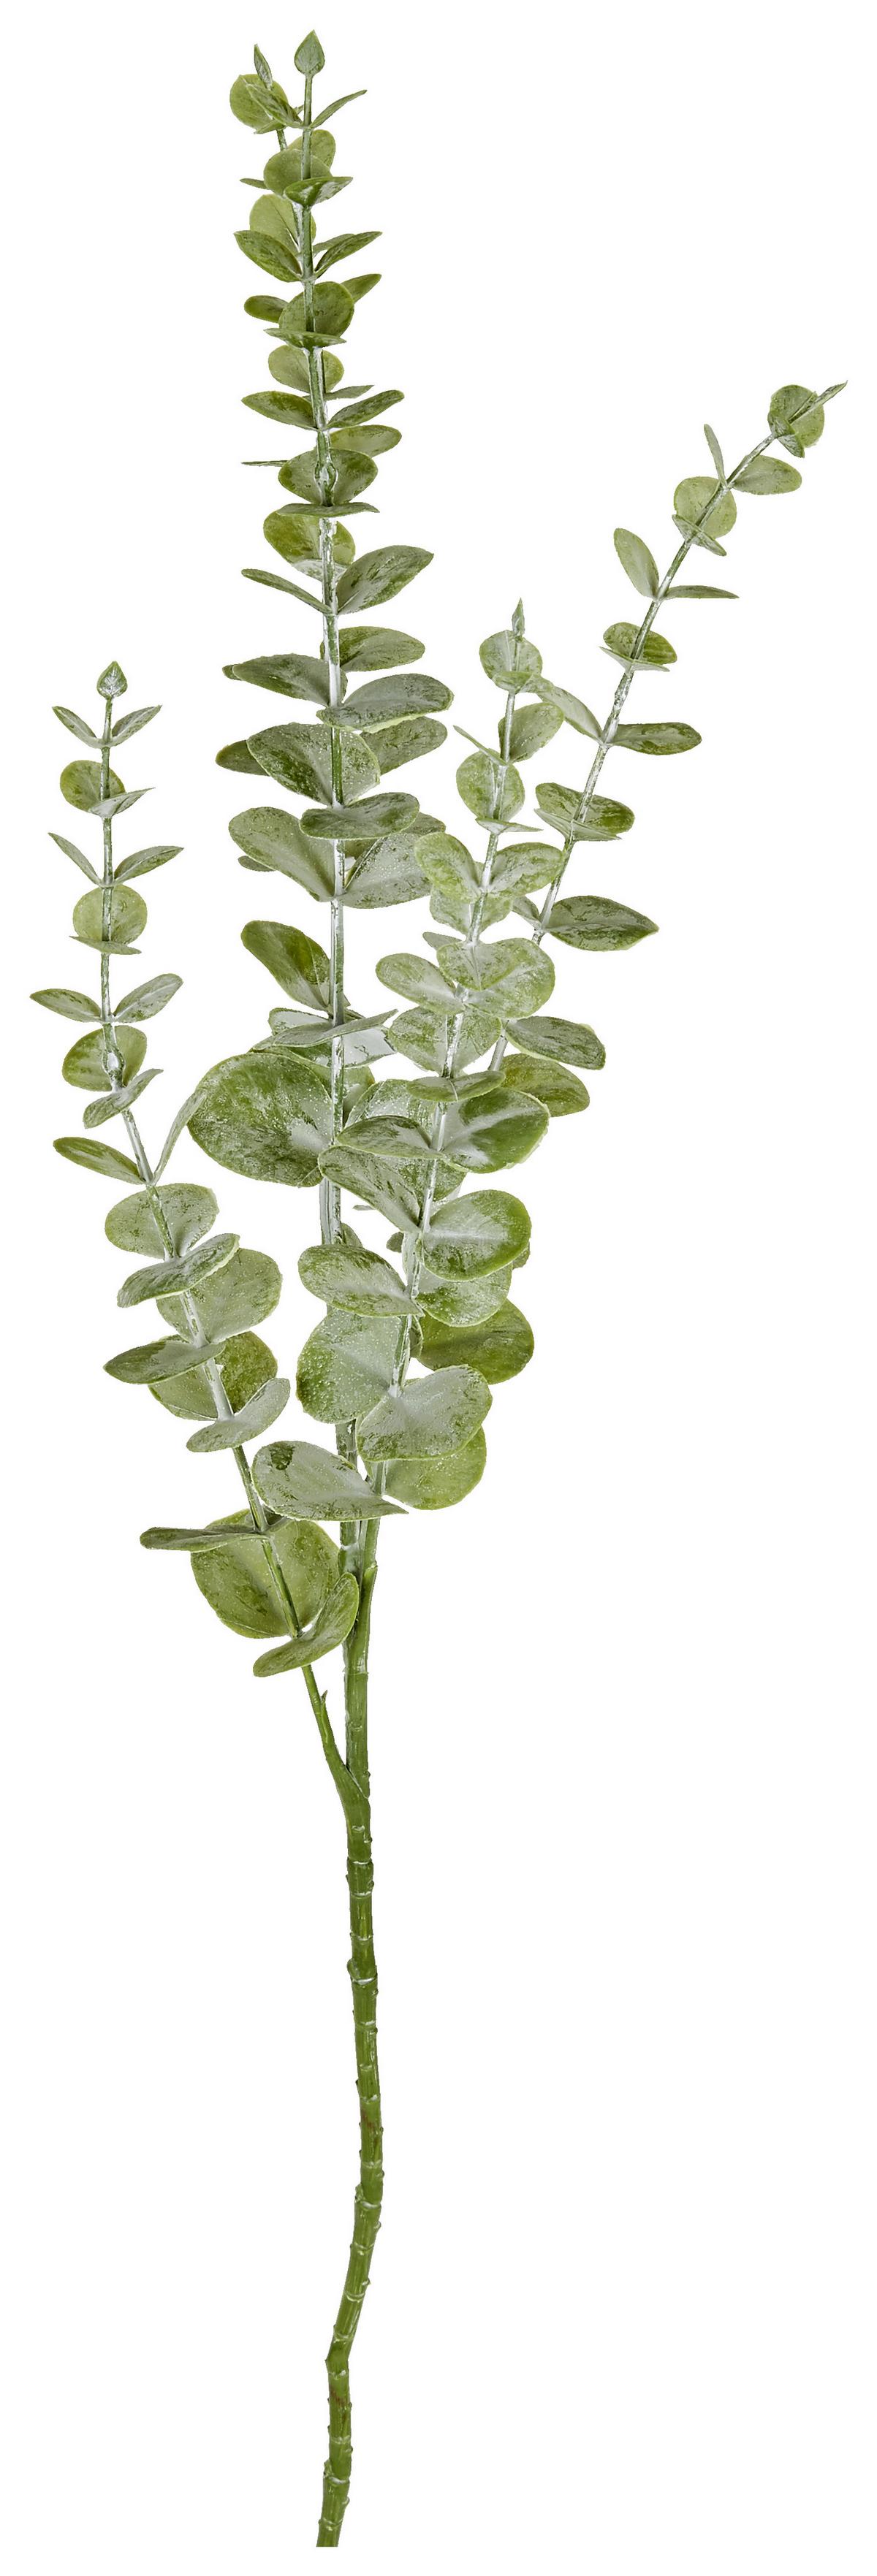 Eukalyptuszweig Kunstpflanze Grün Robert cm, L: 73